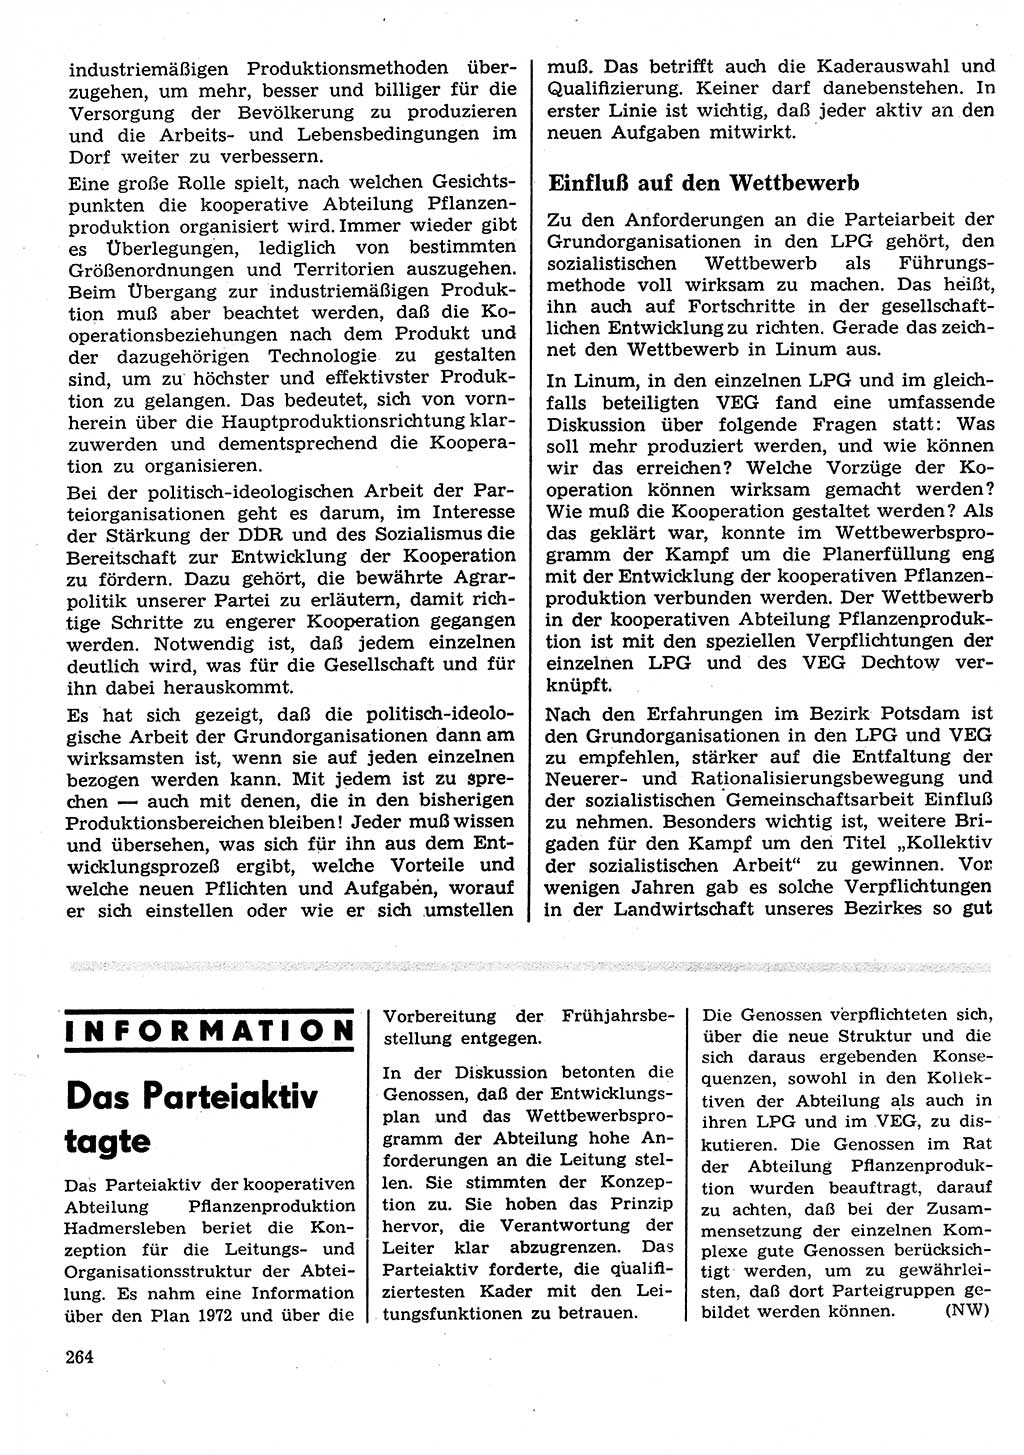 Neuer Weg (NW), Organ des Zentralkomitees (ZK) der SED (Sozialistische Einheitspartei Deutschlands) für Fragen des Parteilebens, 27. Jahrgang [Deutsche Demokratische Republik (DDR)] 1972, Seite 264 (NW ZK SED DDR 1972, S. 264)